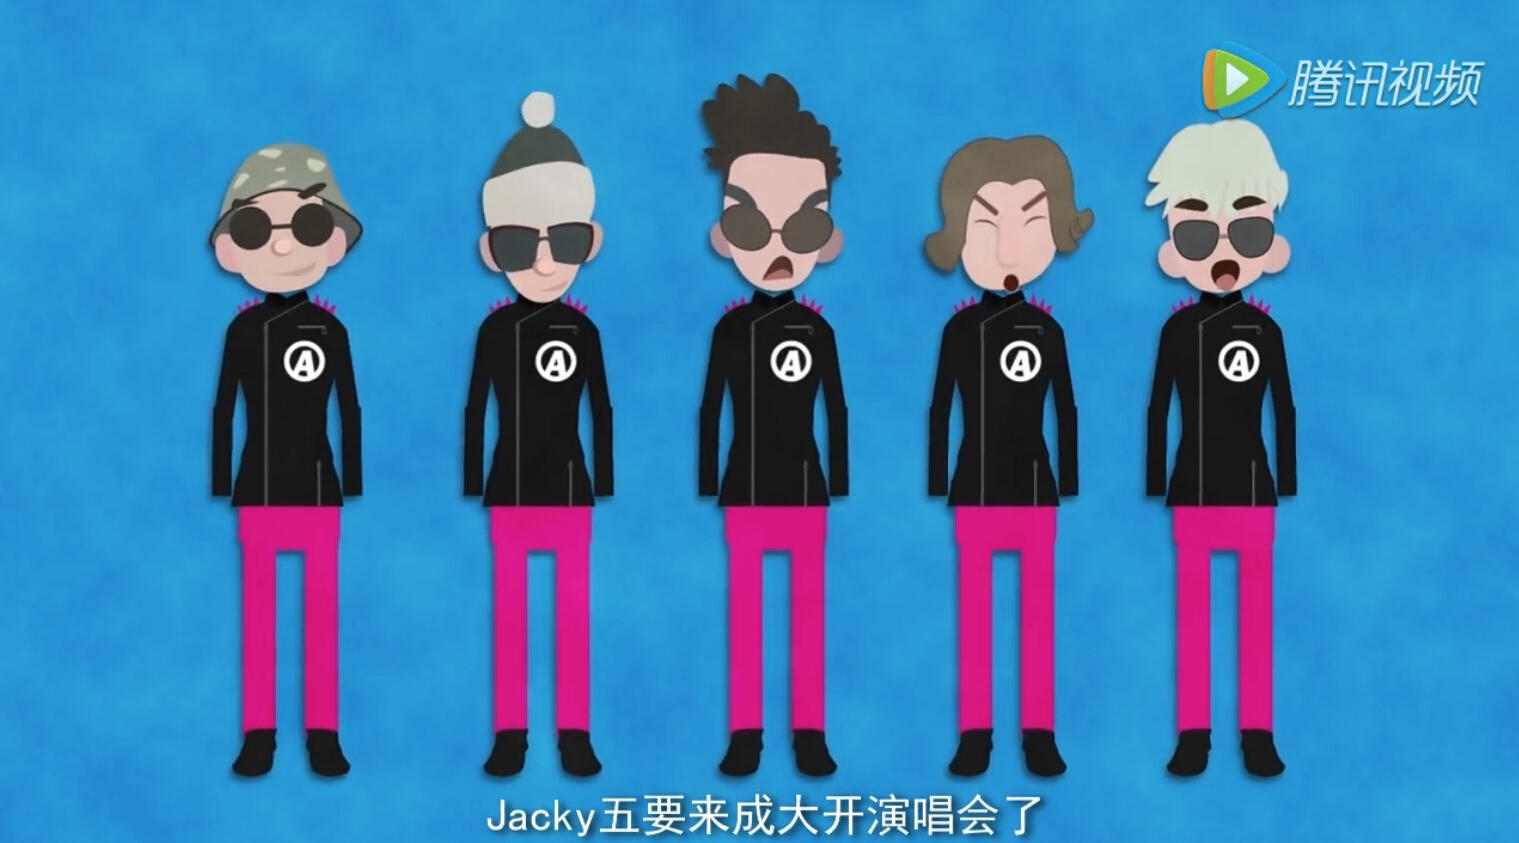 MG音乐动画短片《搞笑中国行》